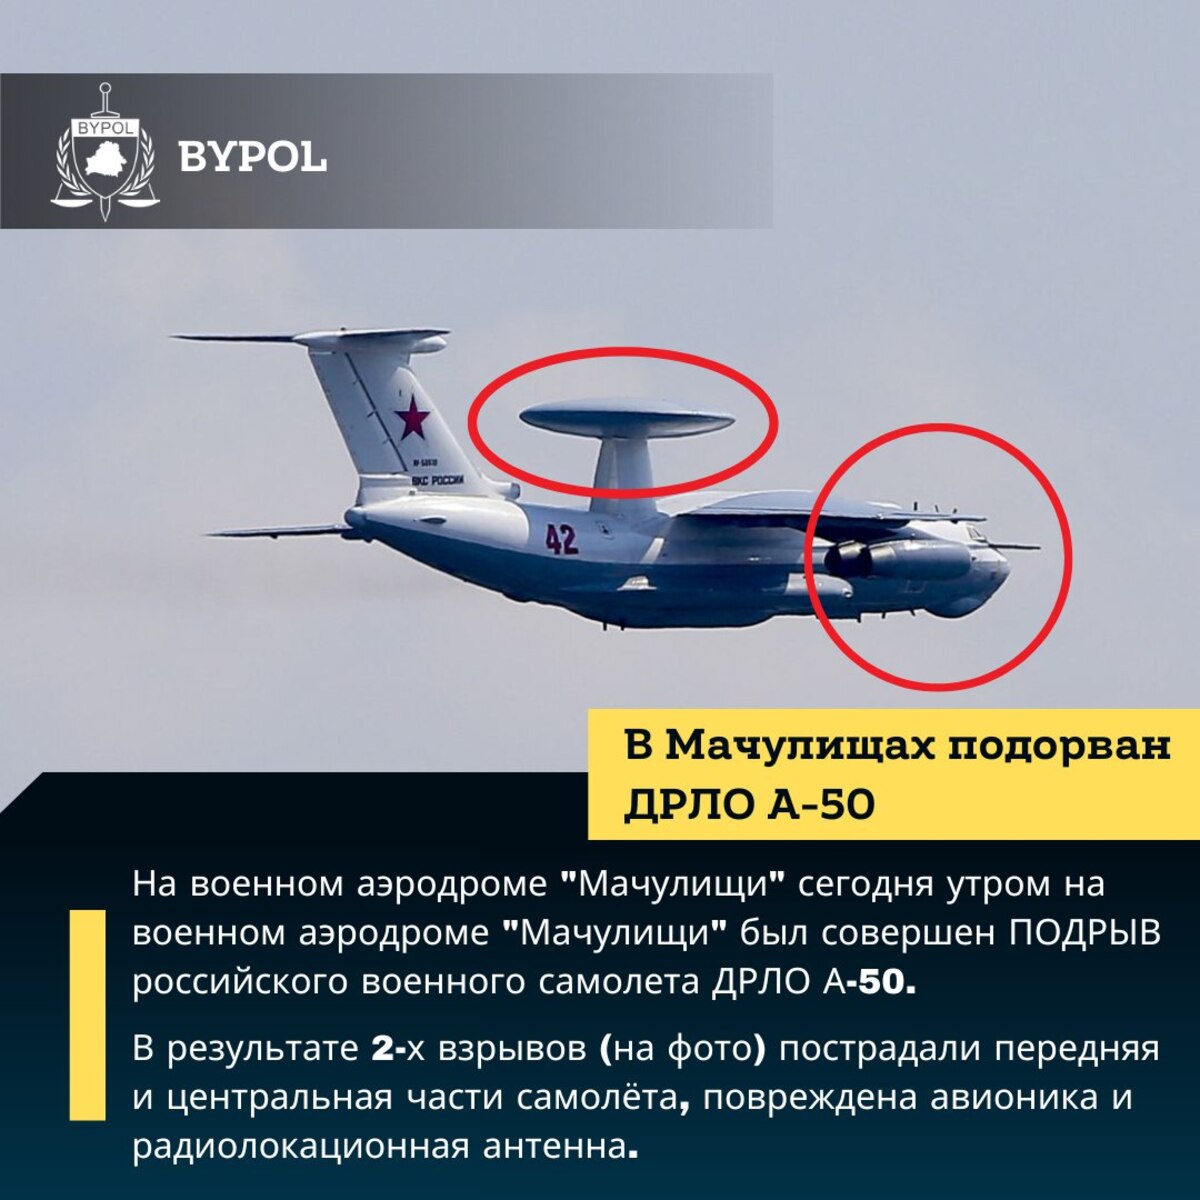 Російський літак А-50 міг бути підірваний на аеродромі "Мачулищі" у Білорусі - подробиці вибуху